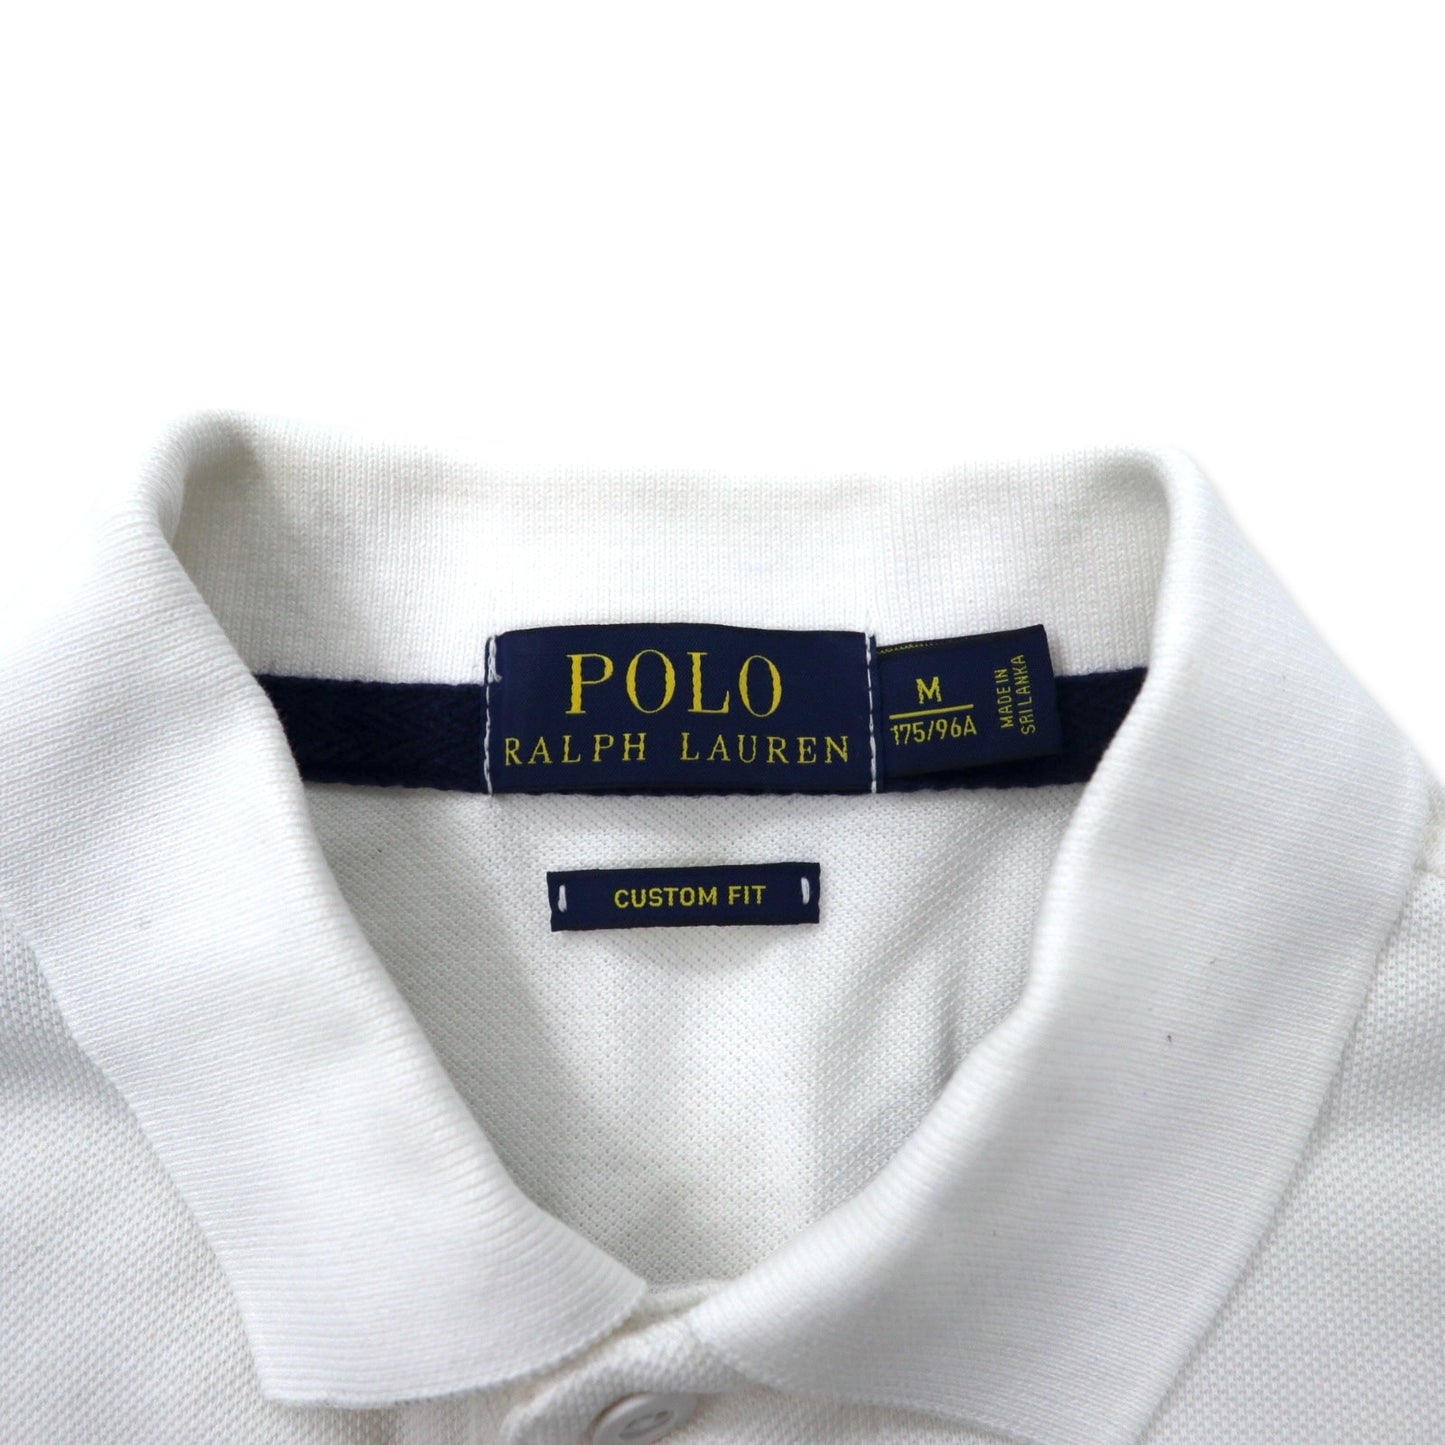 POLO RALPH LAUREN ビッグポニー ラガーシャツ ポロシャツ 175/96A ホワイト コットン CUSTOM FIT